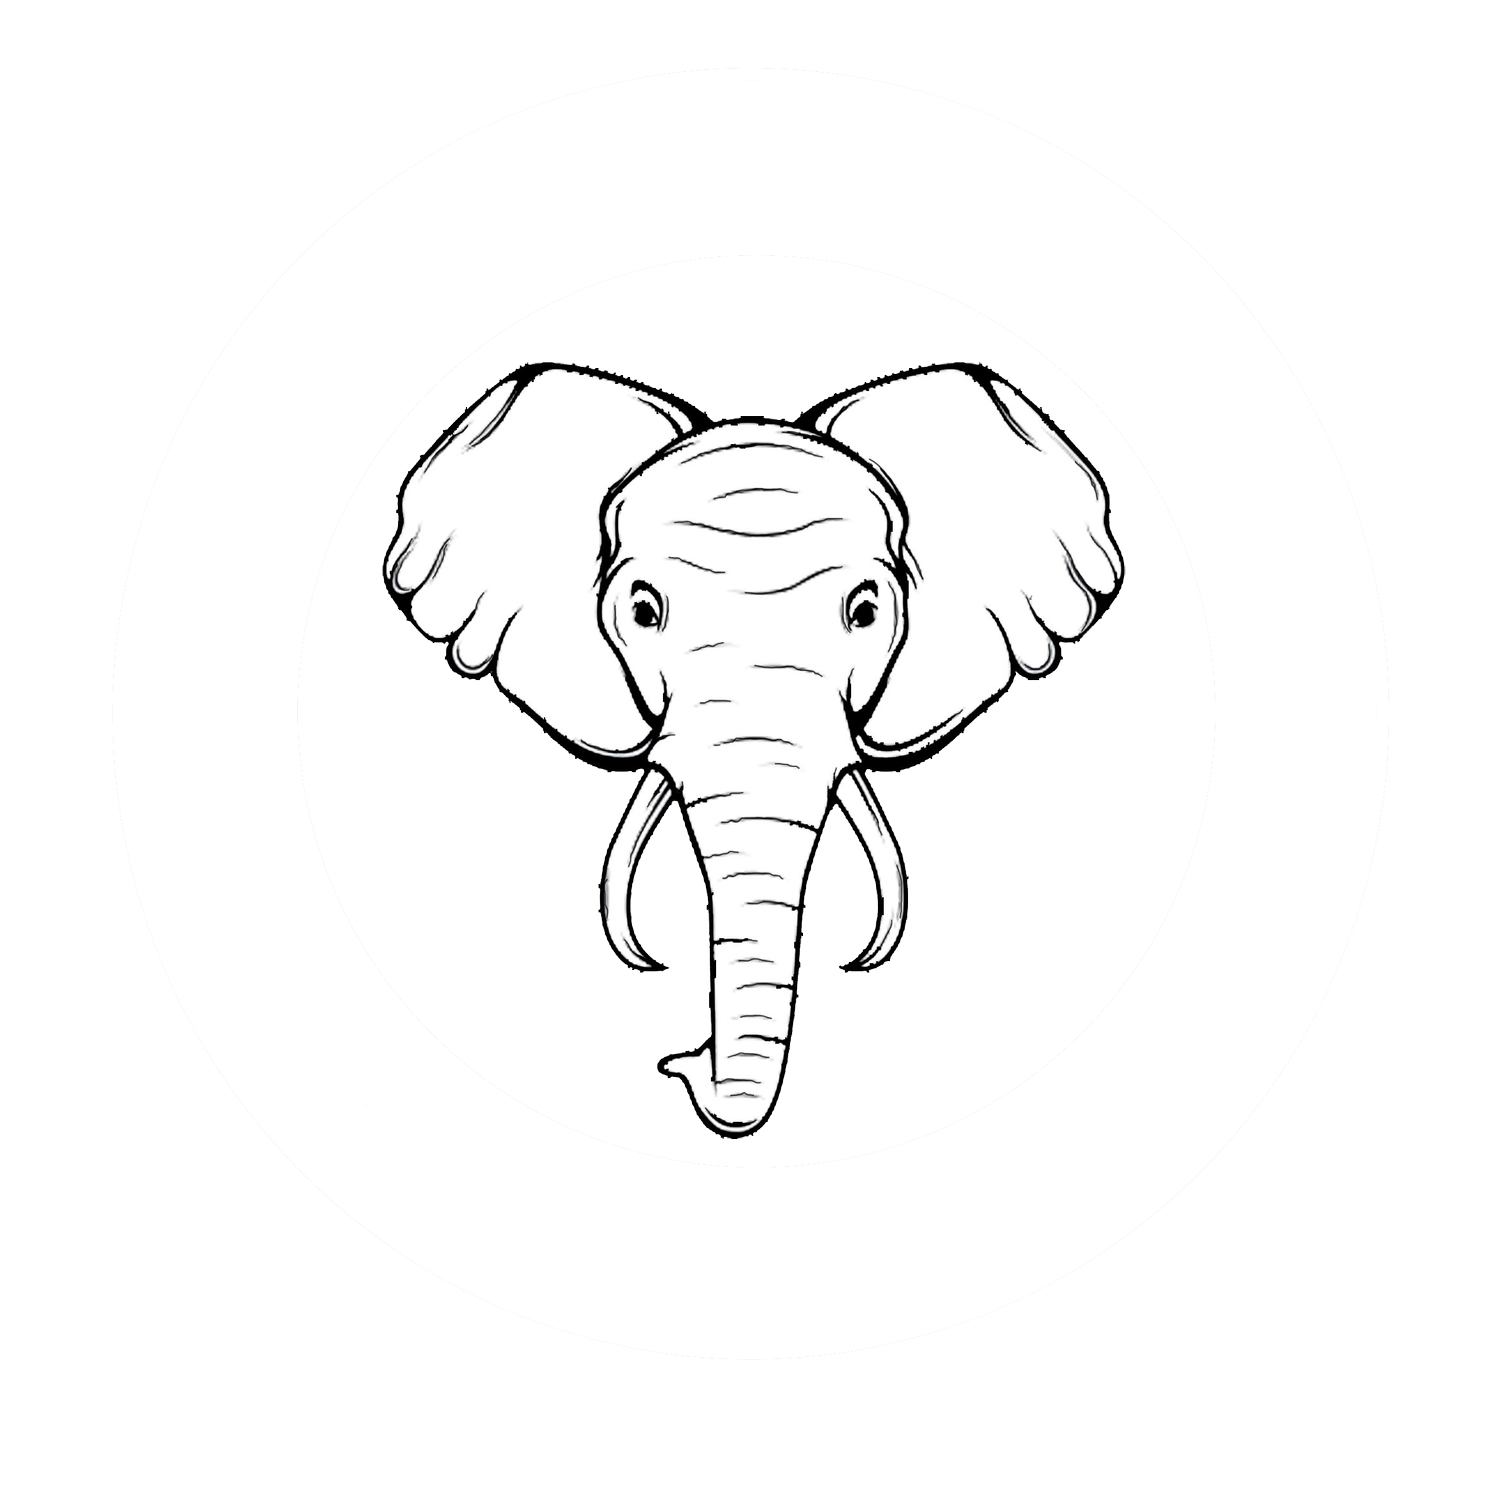 TUSK COFFEE COMPANY